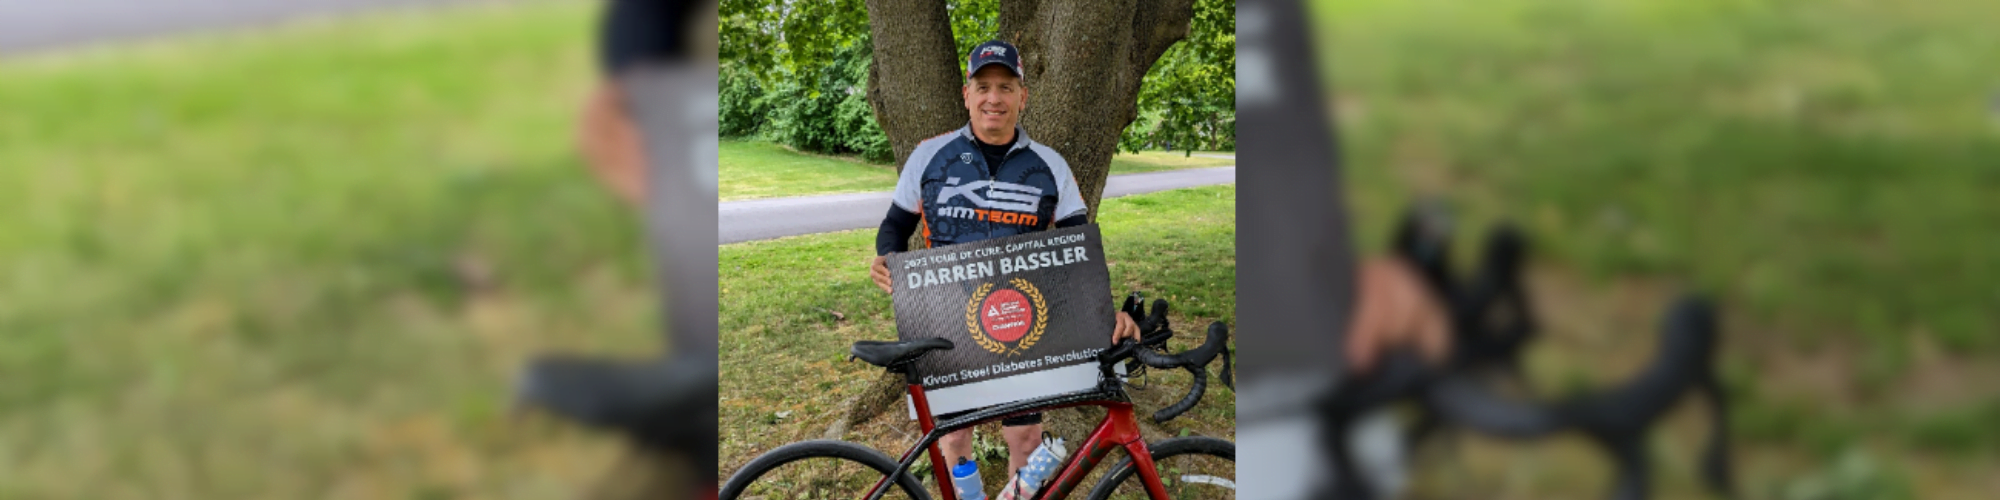 Darren Bassler standing behind his bike